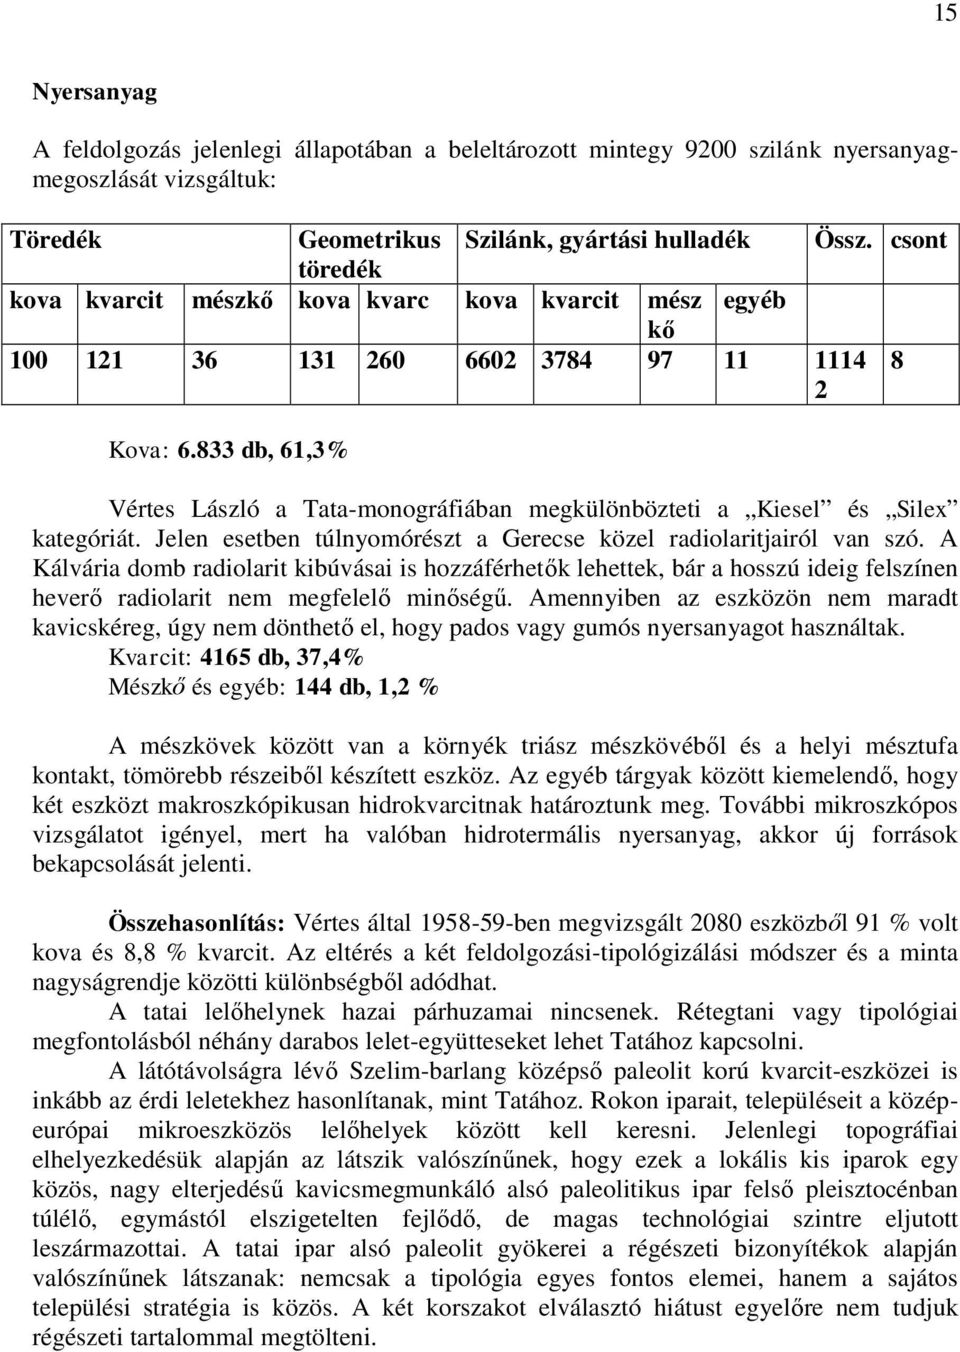 833 db, 61,3% Vértes László a Tata-monográfiában megkülönbözteti a Kiesel és Silex kategóriát. Jelen esetben túlnyomórészt a Gerecse közel radiolaritjairól van szó.